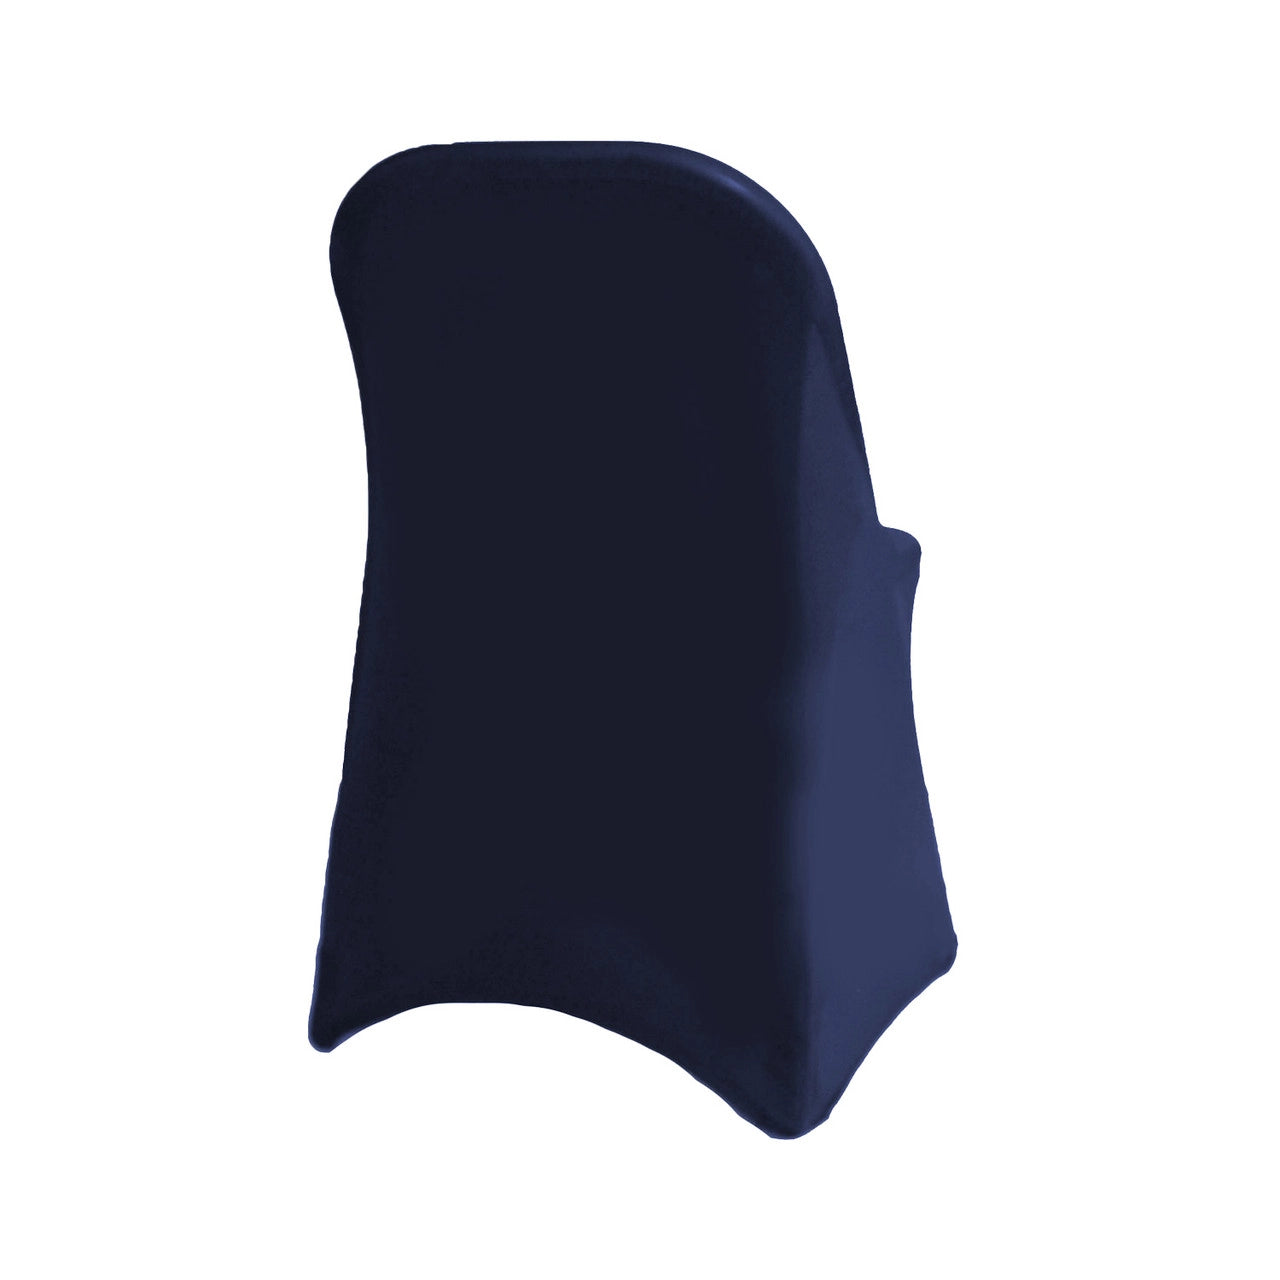 Velvet Spandex Folding Chair Cover in Navy Blue – Urquid Linen